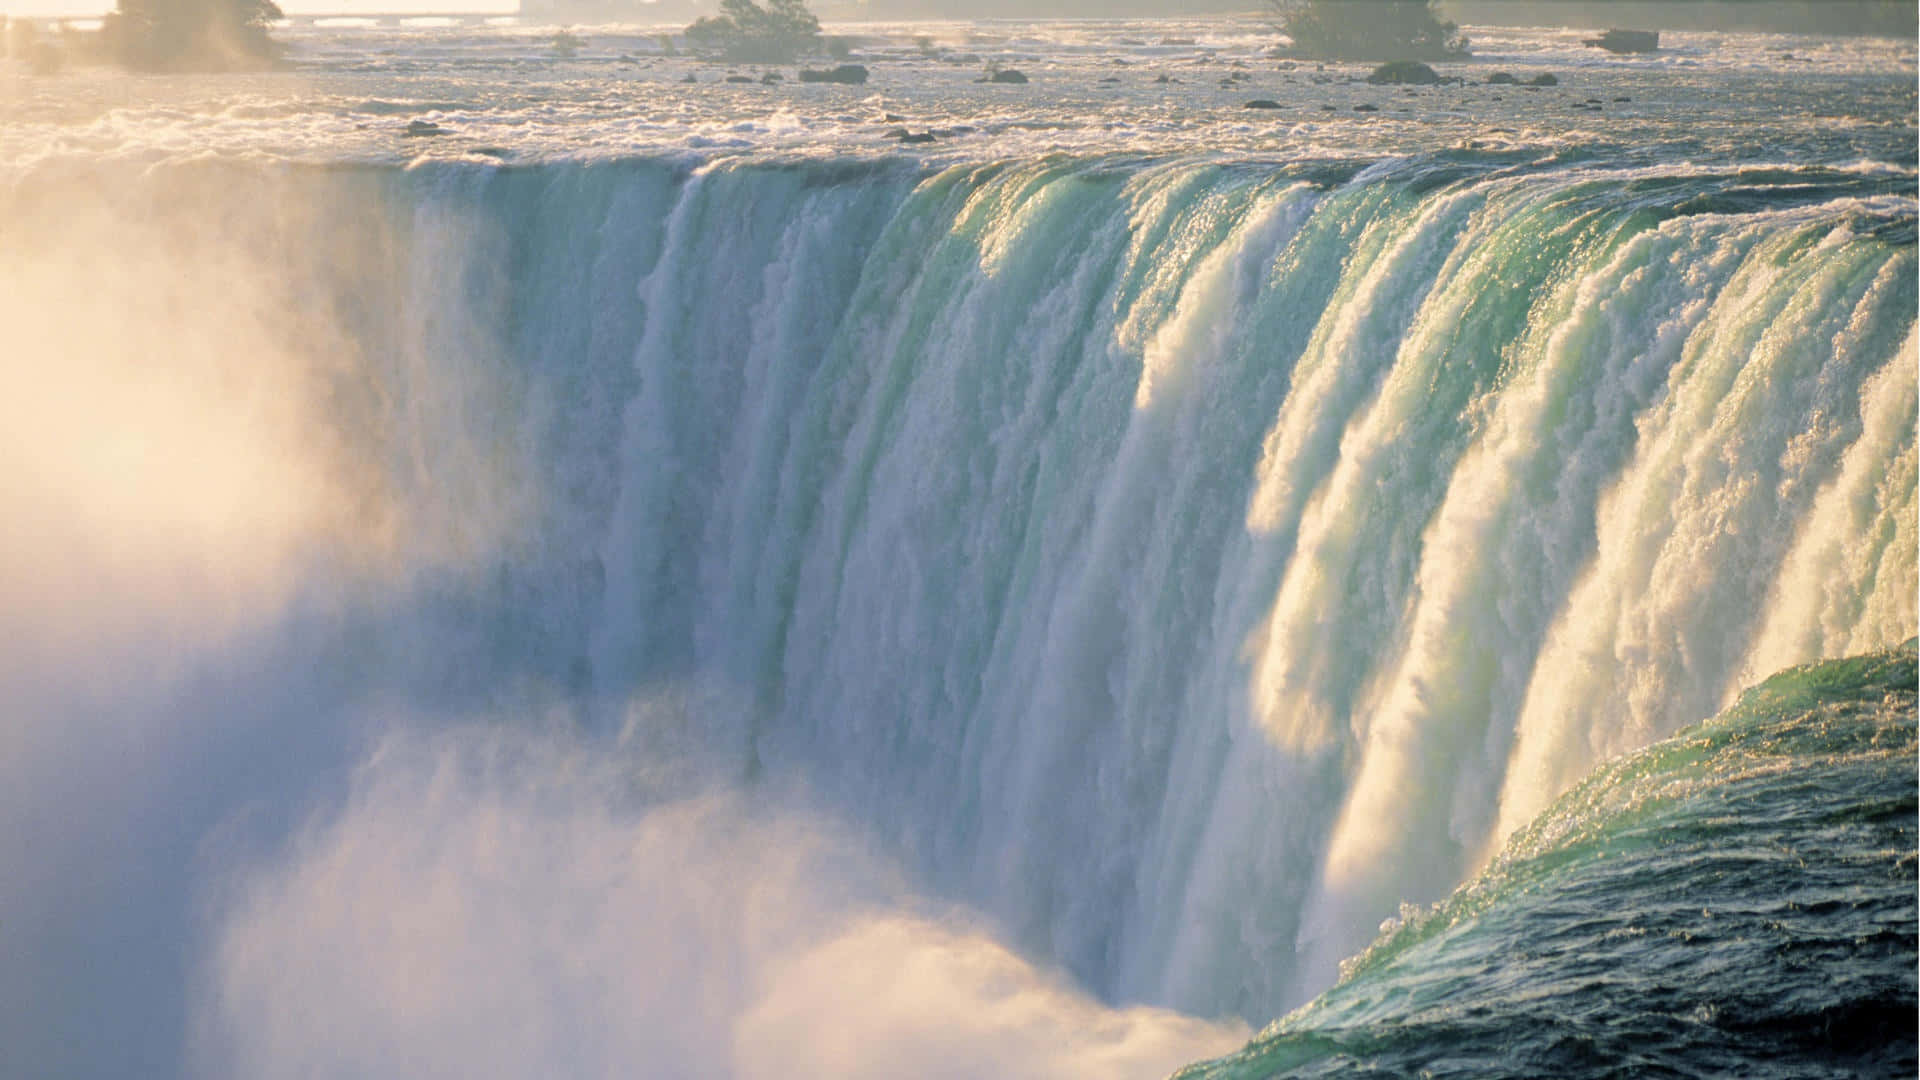 A Unique View of Niagara Falls